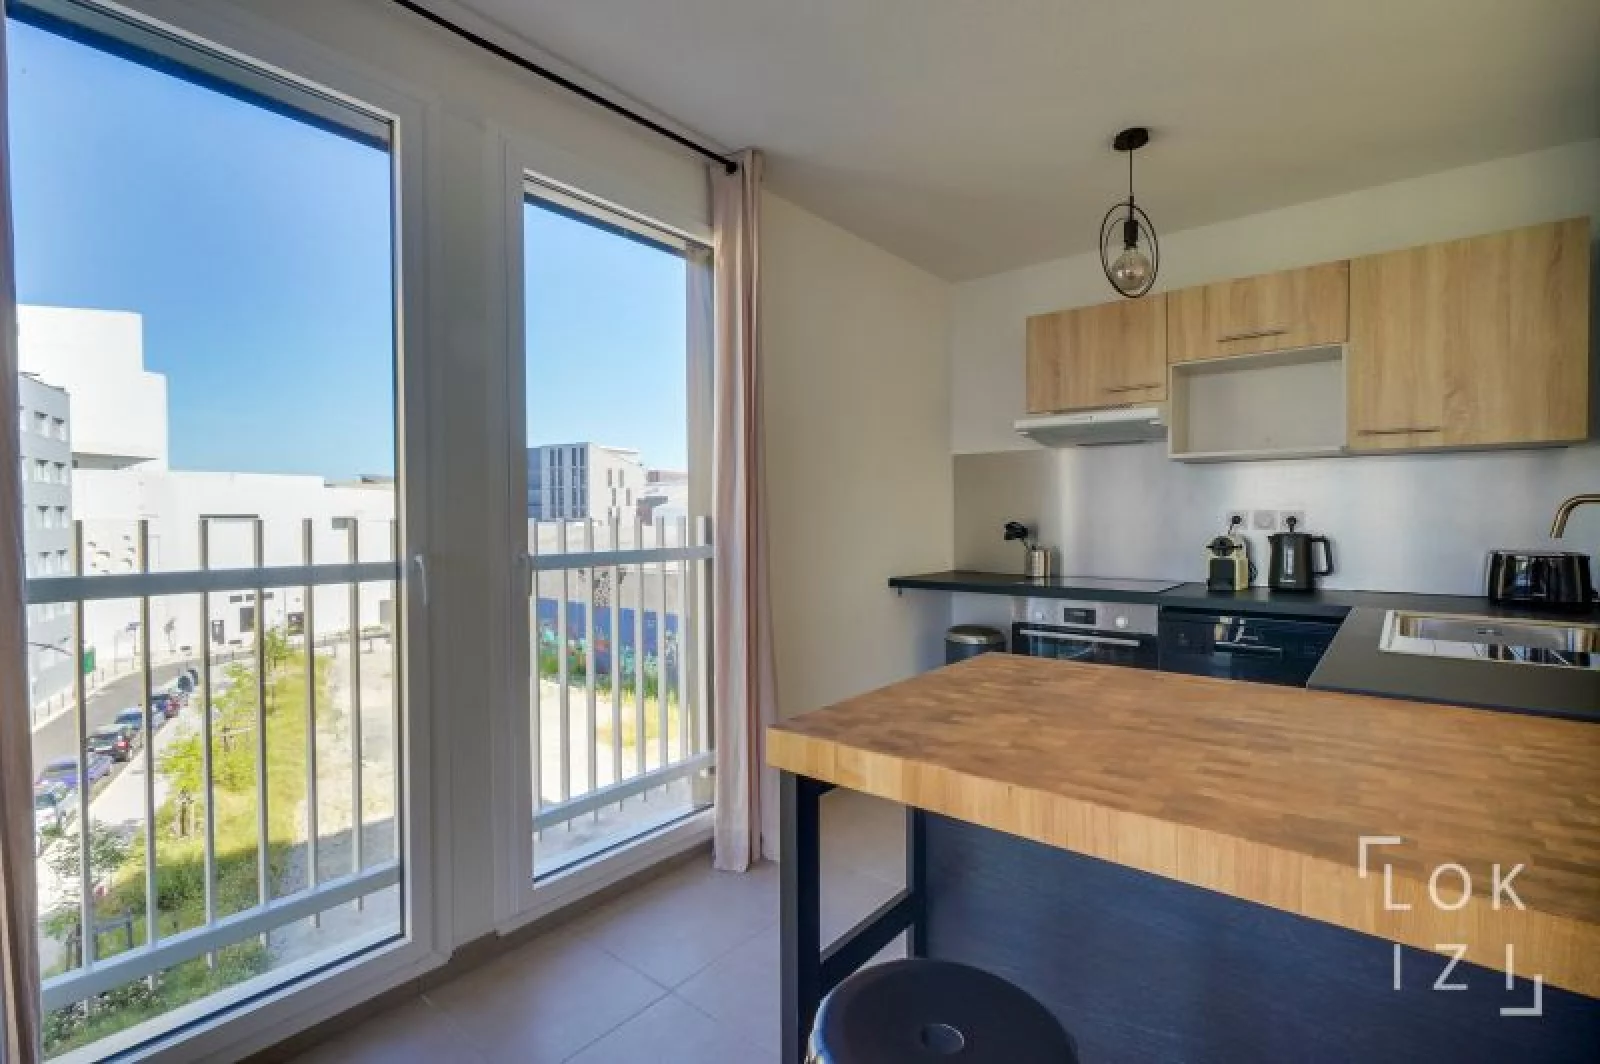 Location appartement meublé 3 pièces 70m² (Bordeaux - Bassins à flot)